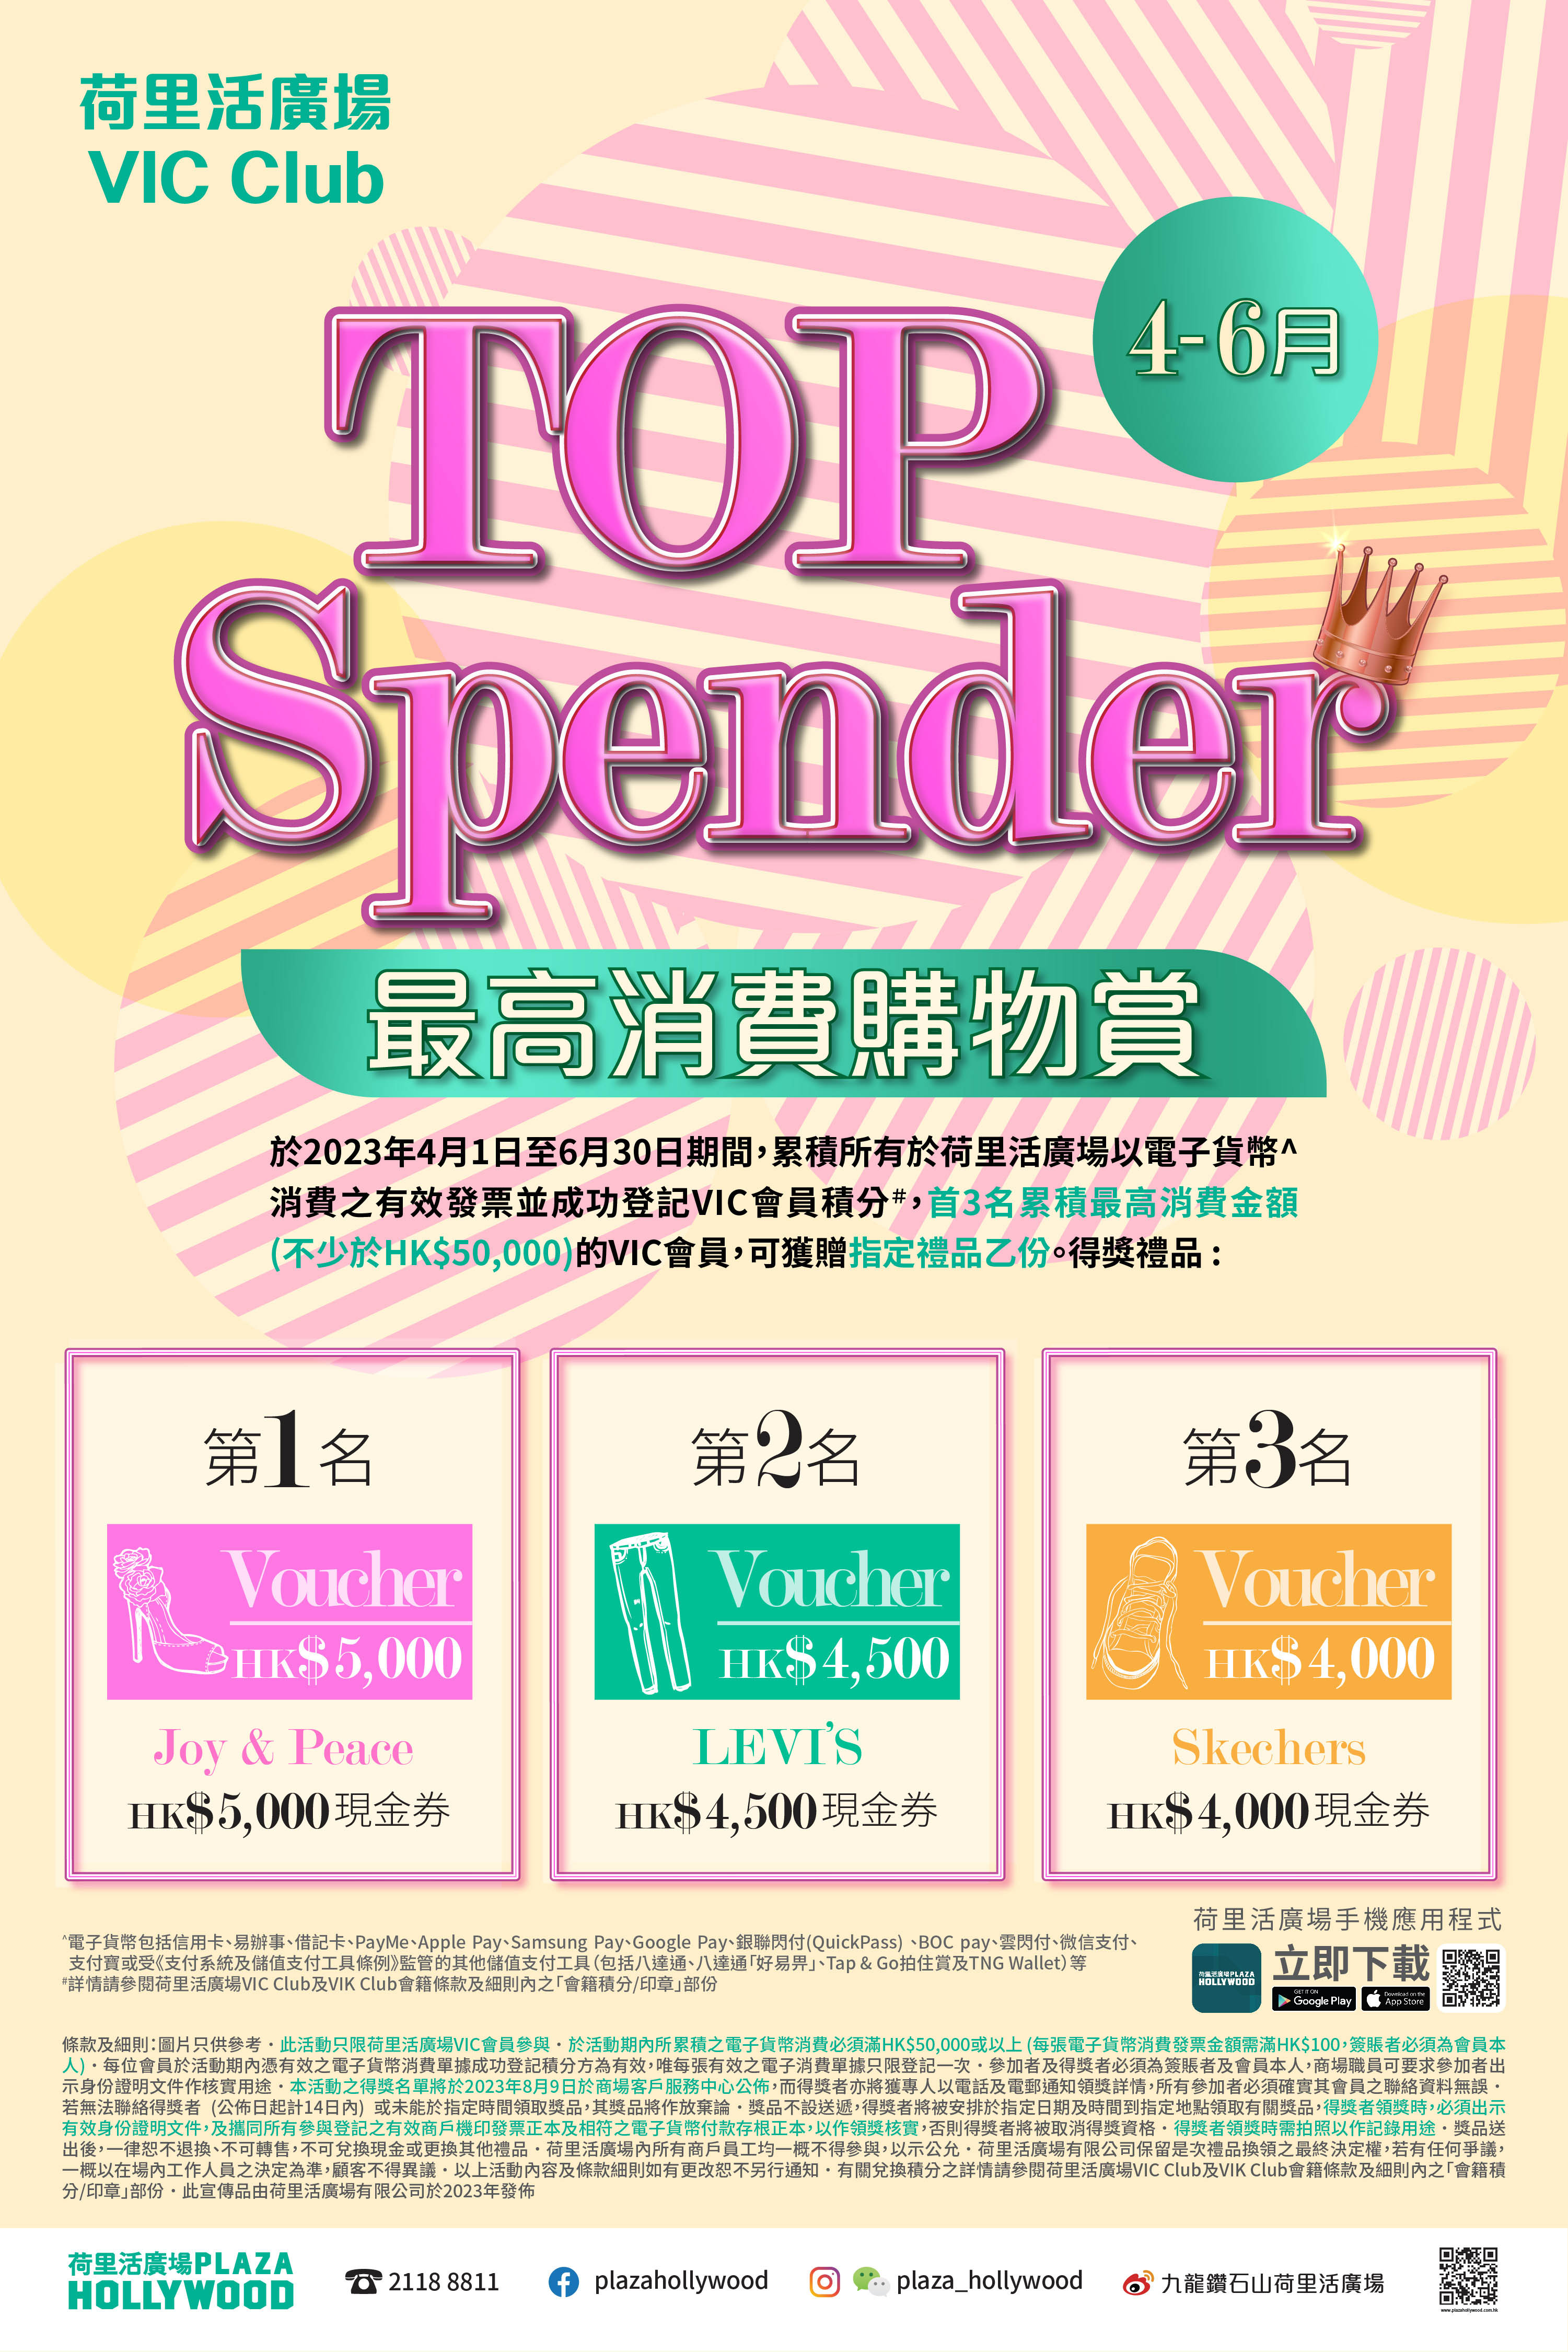 VIC Highest Spending Program (Apr-Jun)